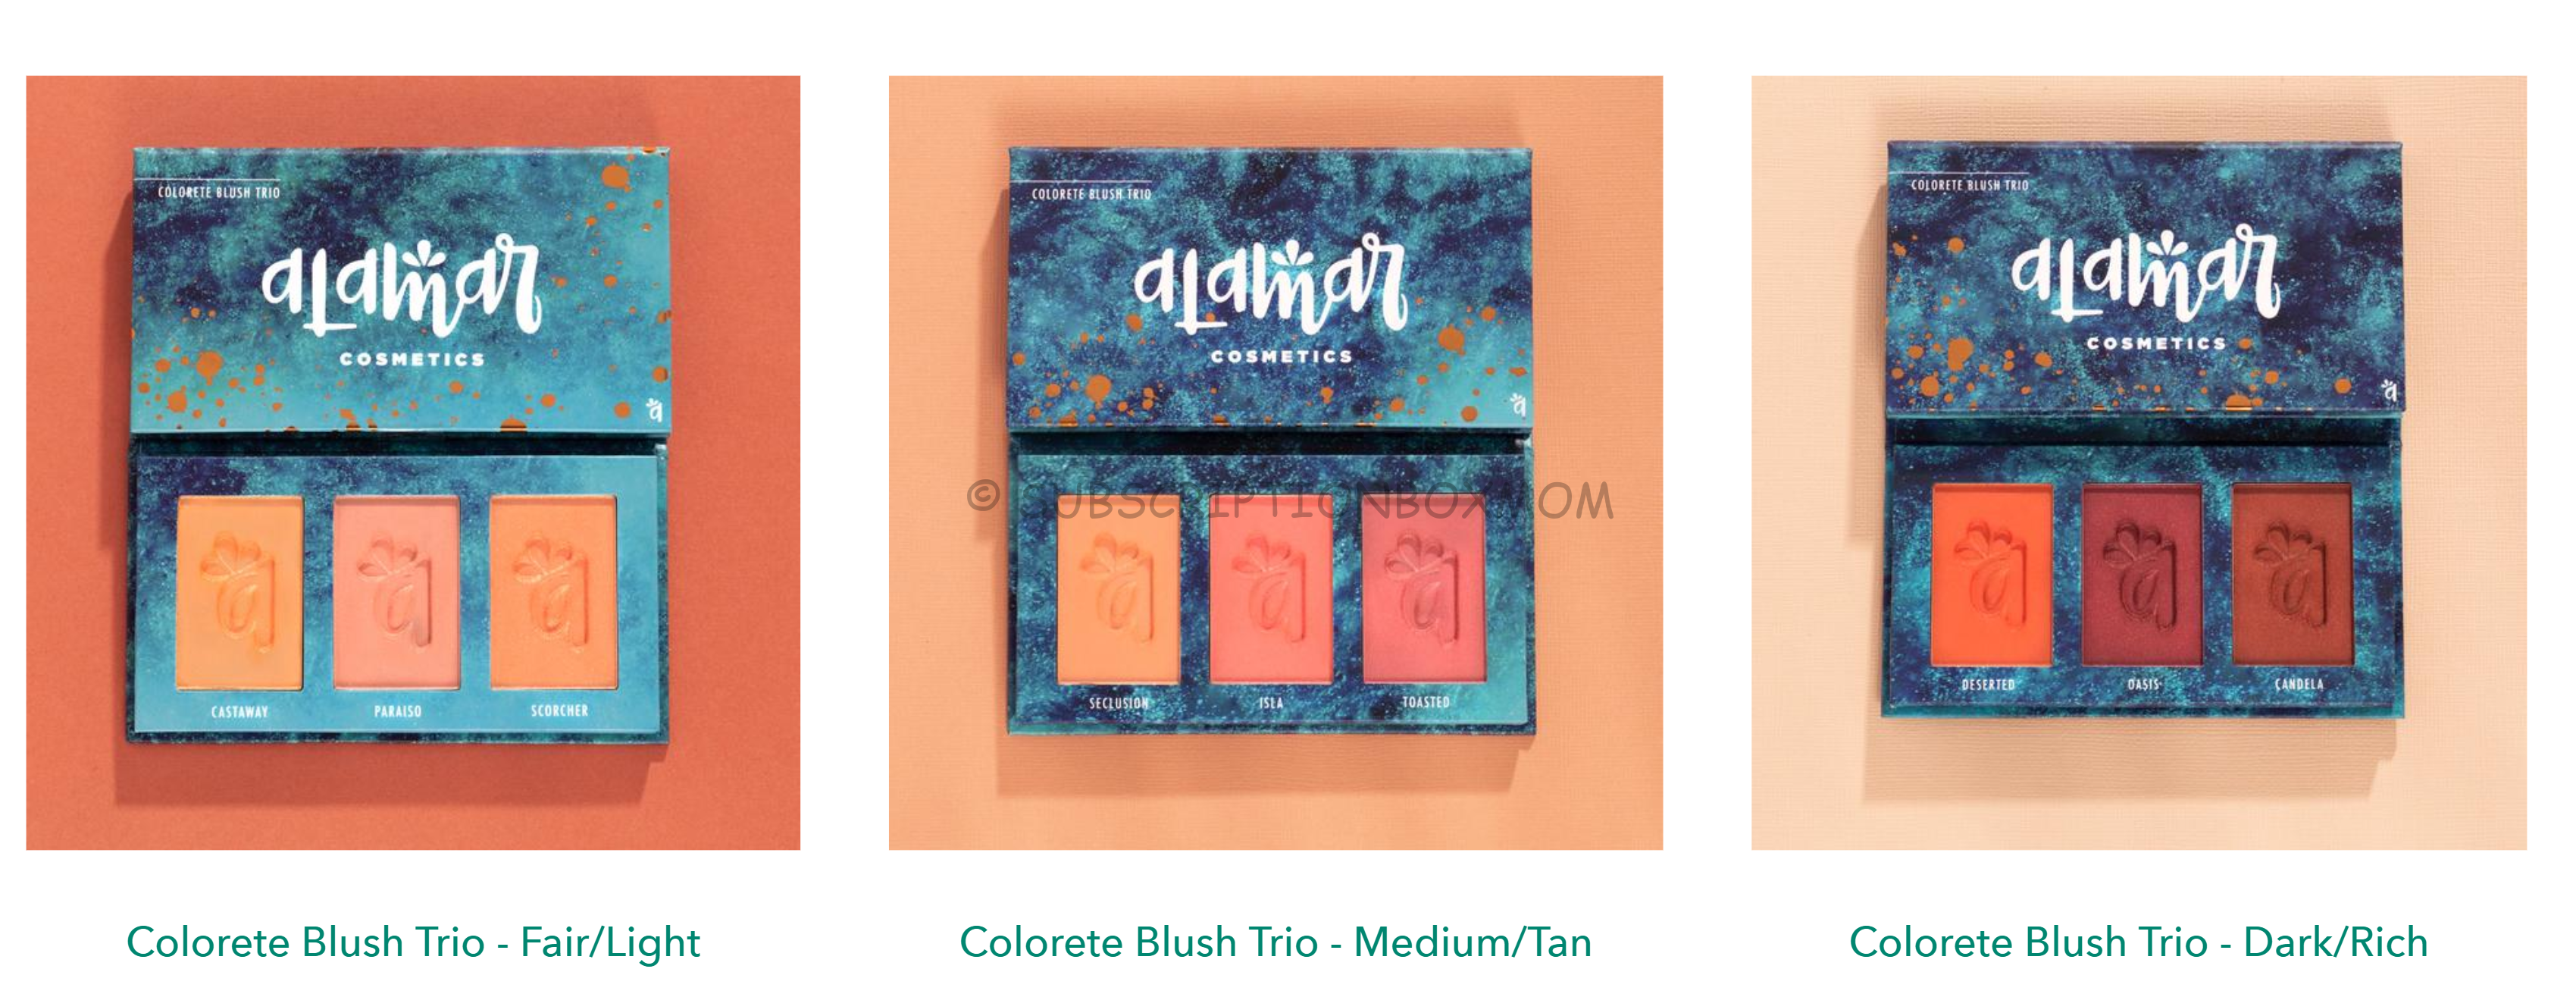 Alamar Cosmetics Colorette Blush Trio 